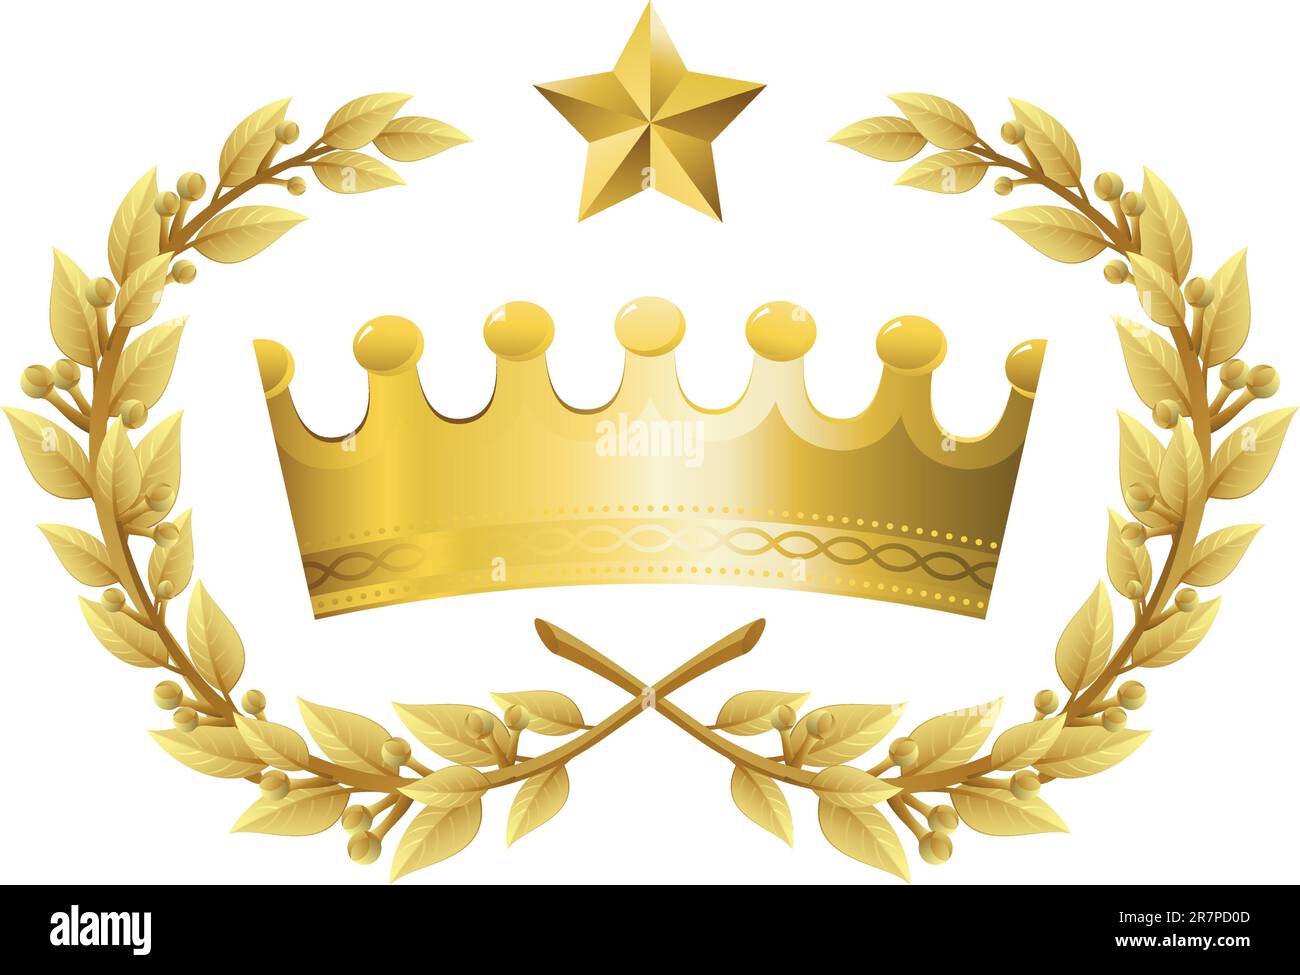 Illustrazione vettoriale di Gold King Crown con Quality Laurel Wreath e Champion Star. Le rappresentazioni includono: Potenza, successo, Vittoria, qualità, Fir... Illustrazione Vettoriale